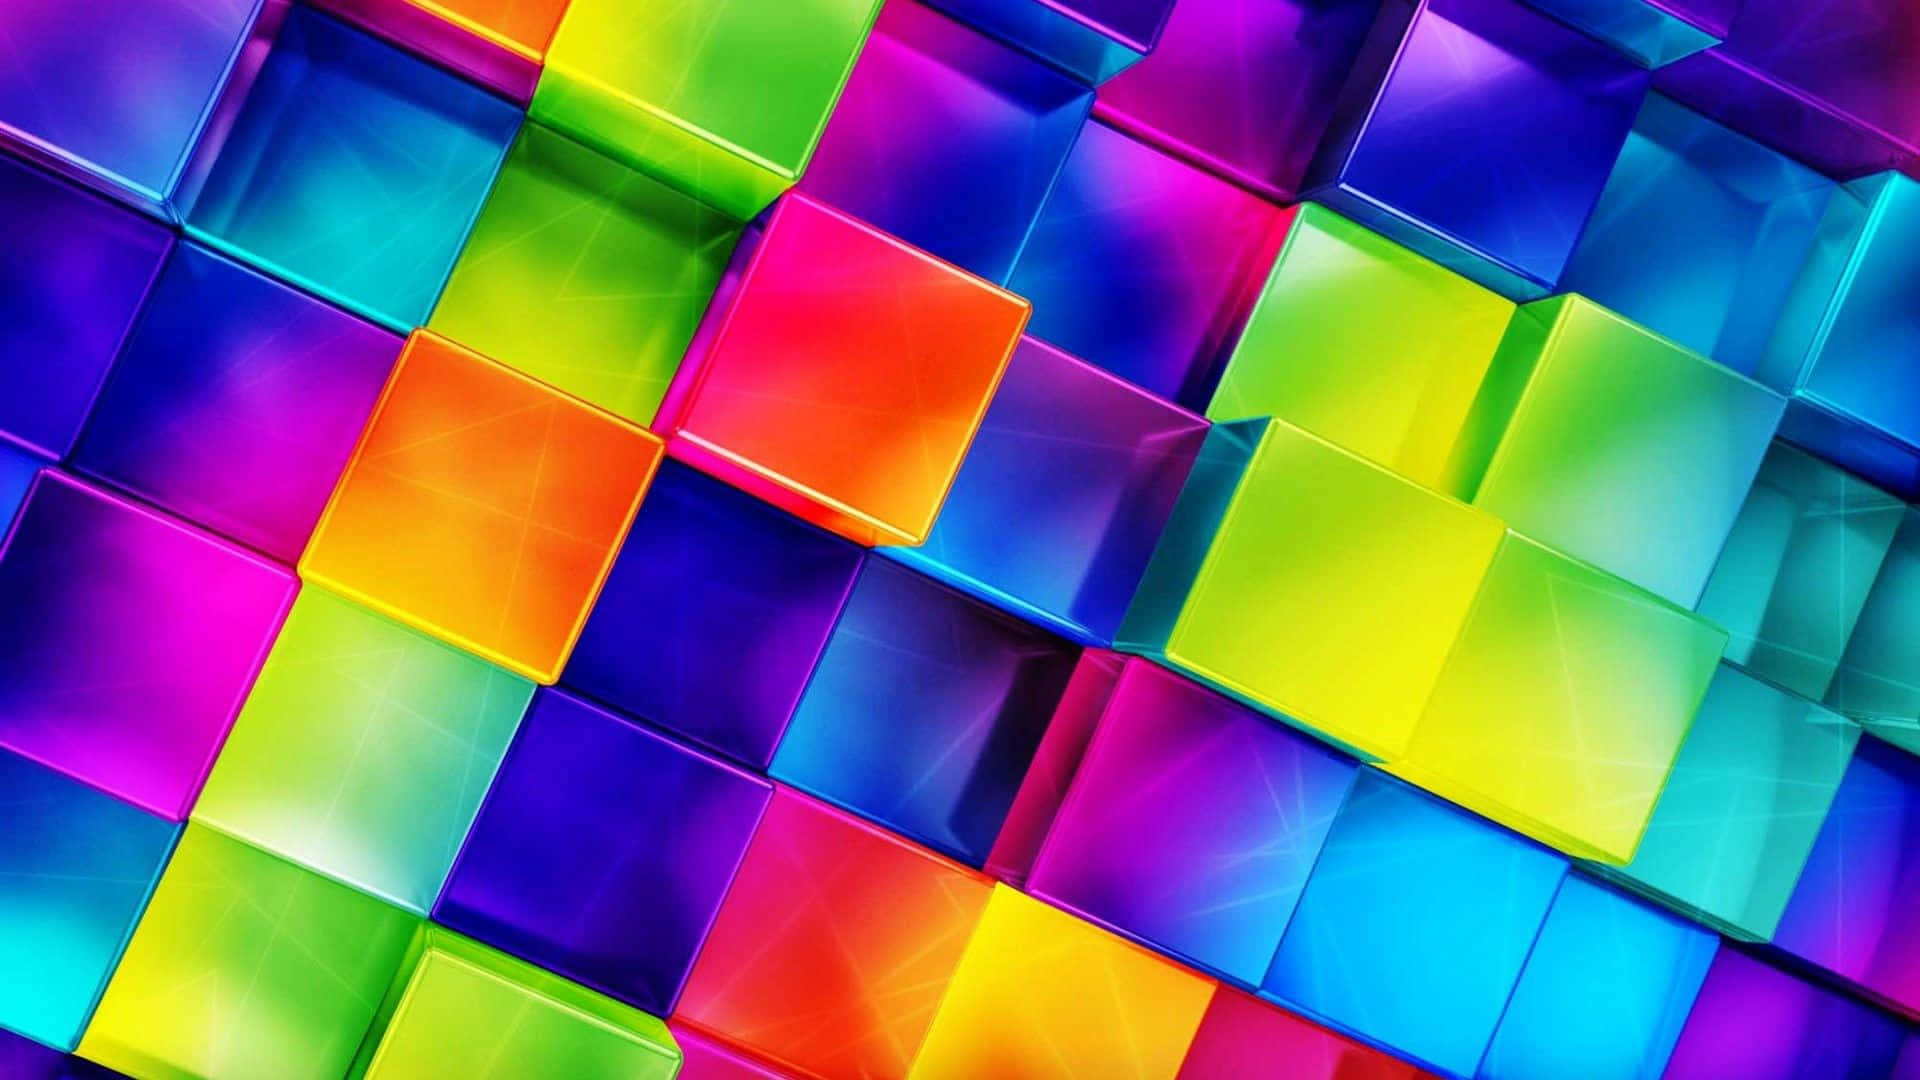 Ljusbakgrund Av Färgglada 3d-kuber